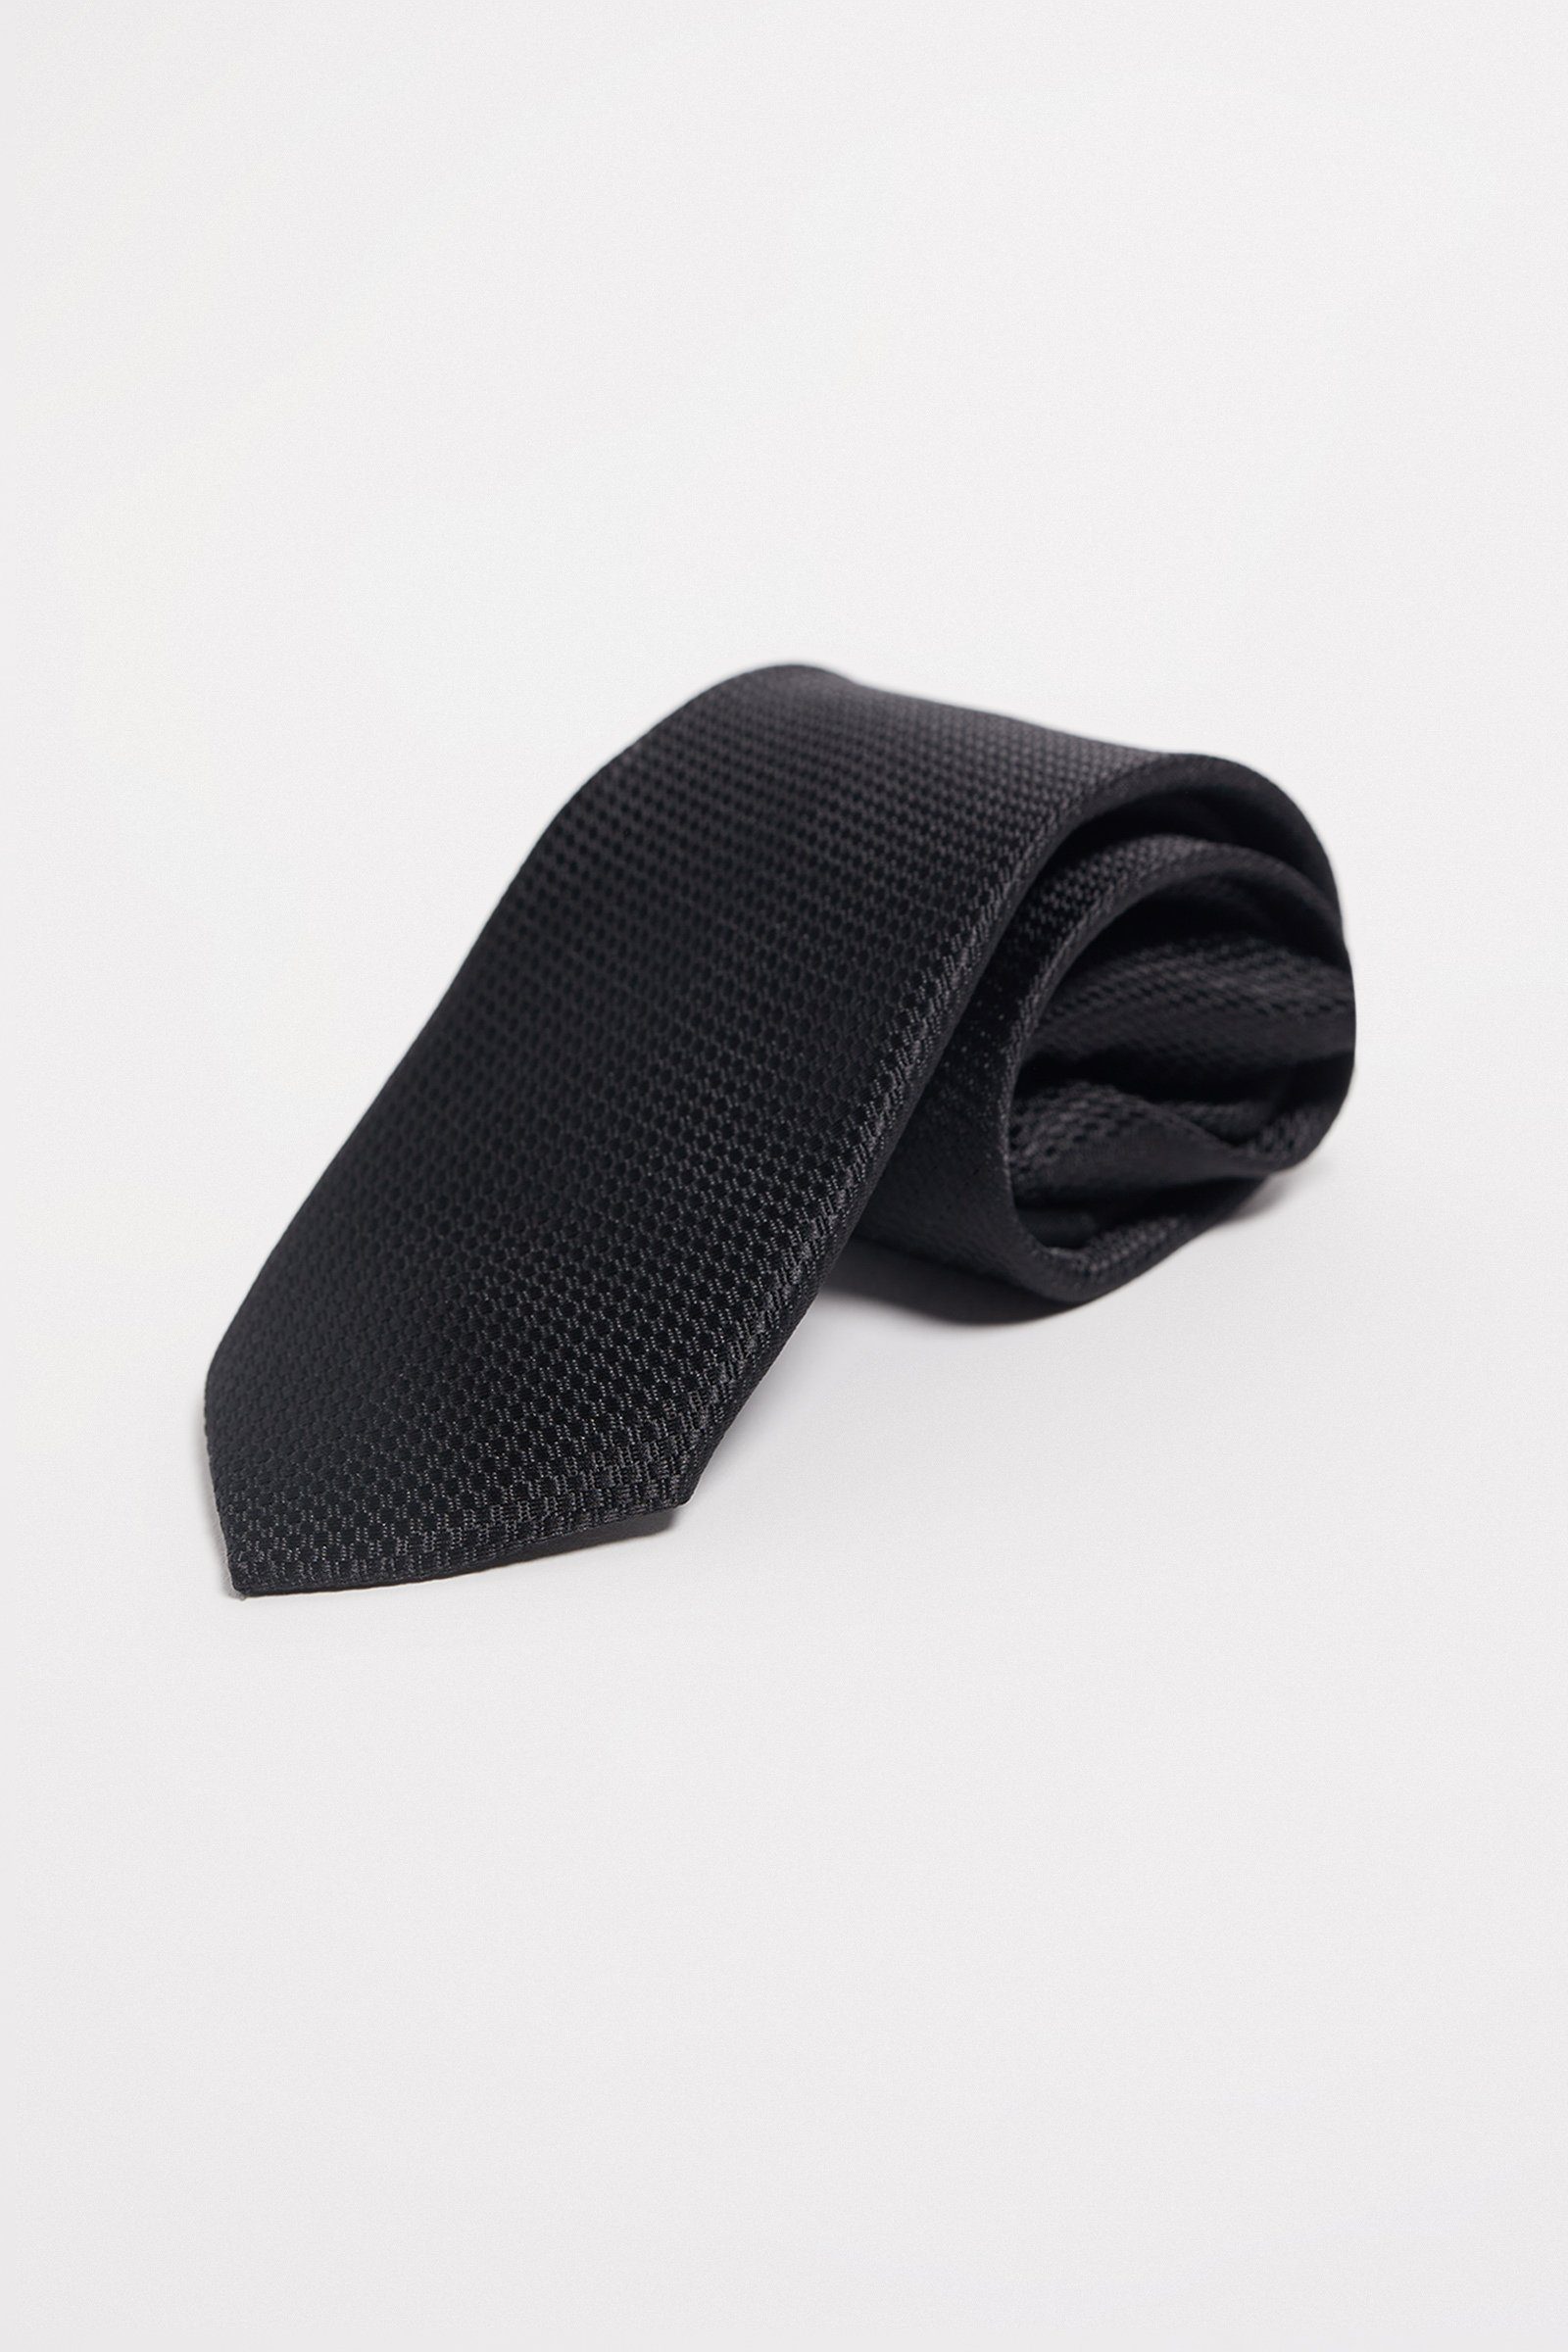 Krawatte Fashion WE Schwarz